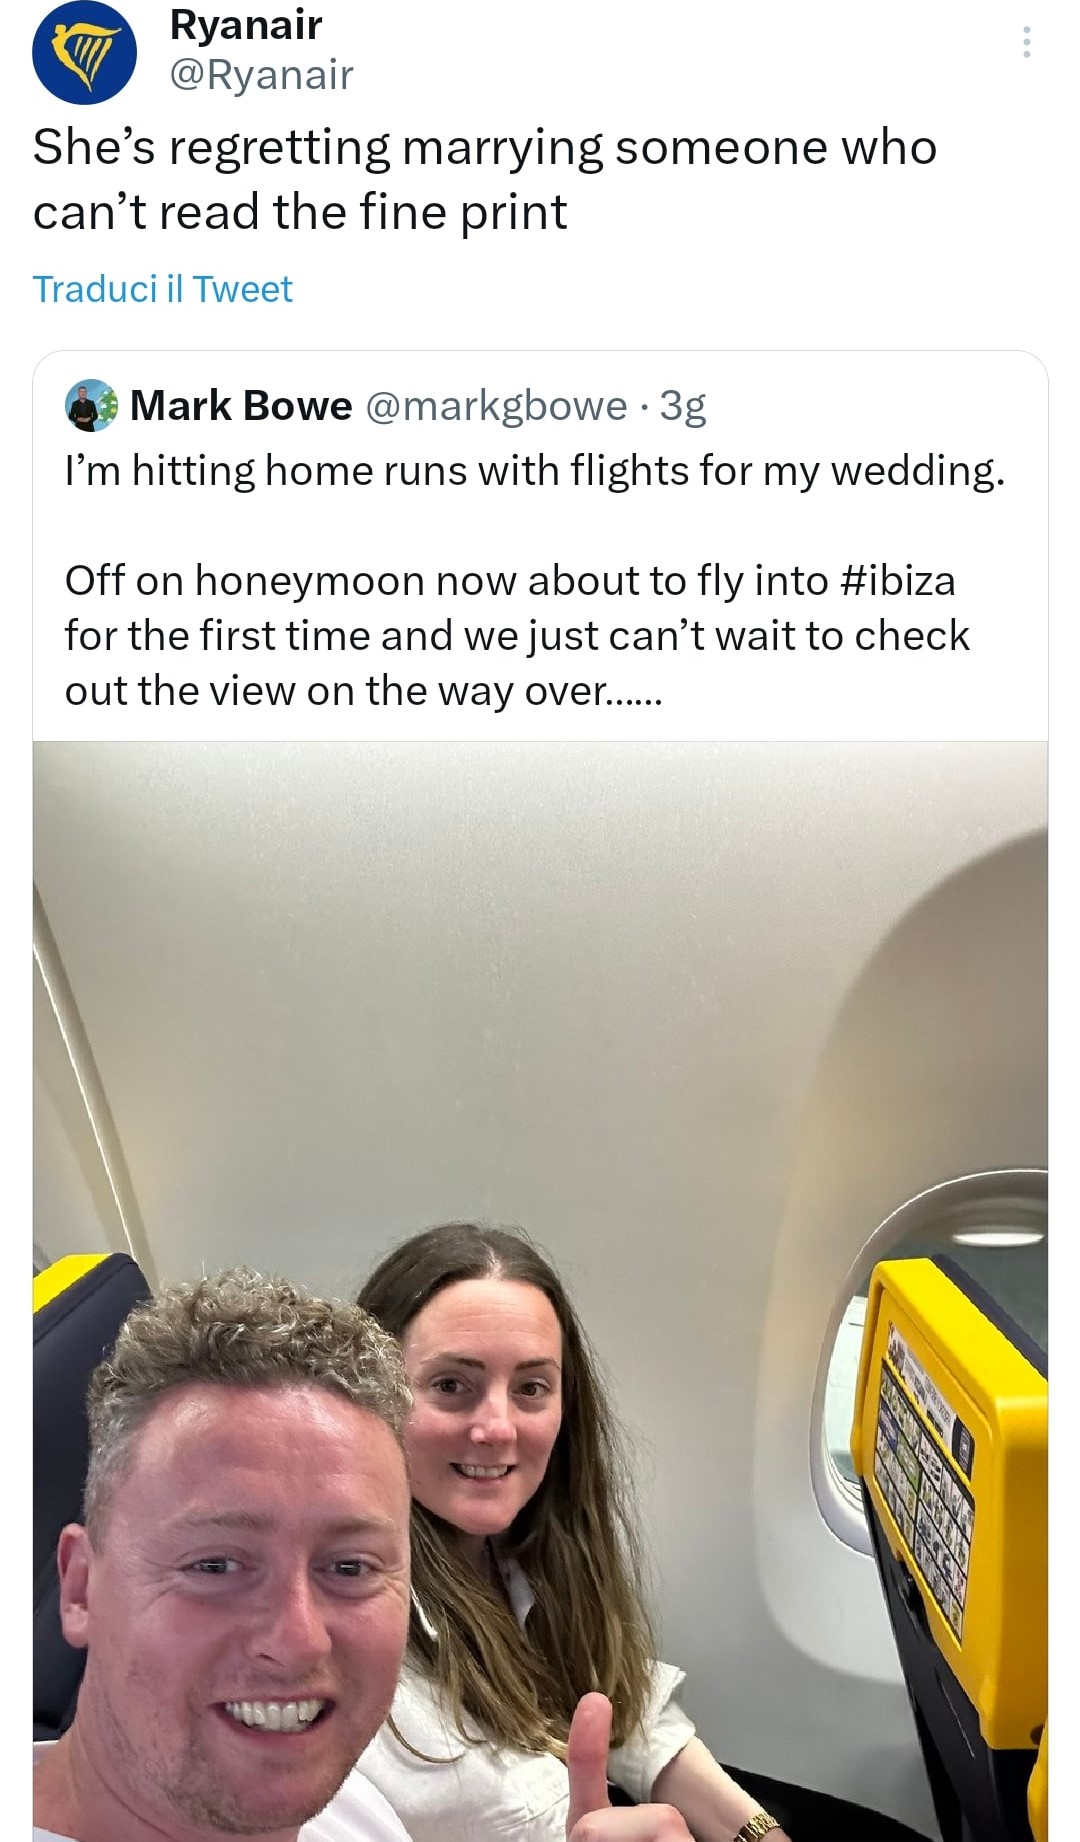 Il tweet della coppia e la risposta salace di Ryanair. Fonte: twitter.com